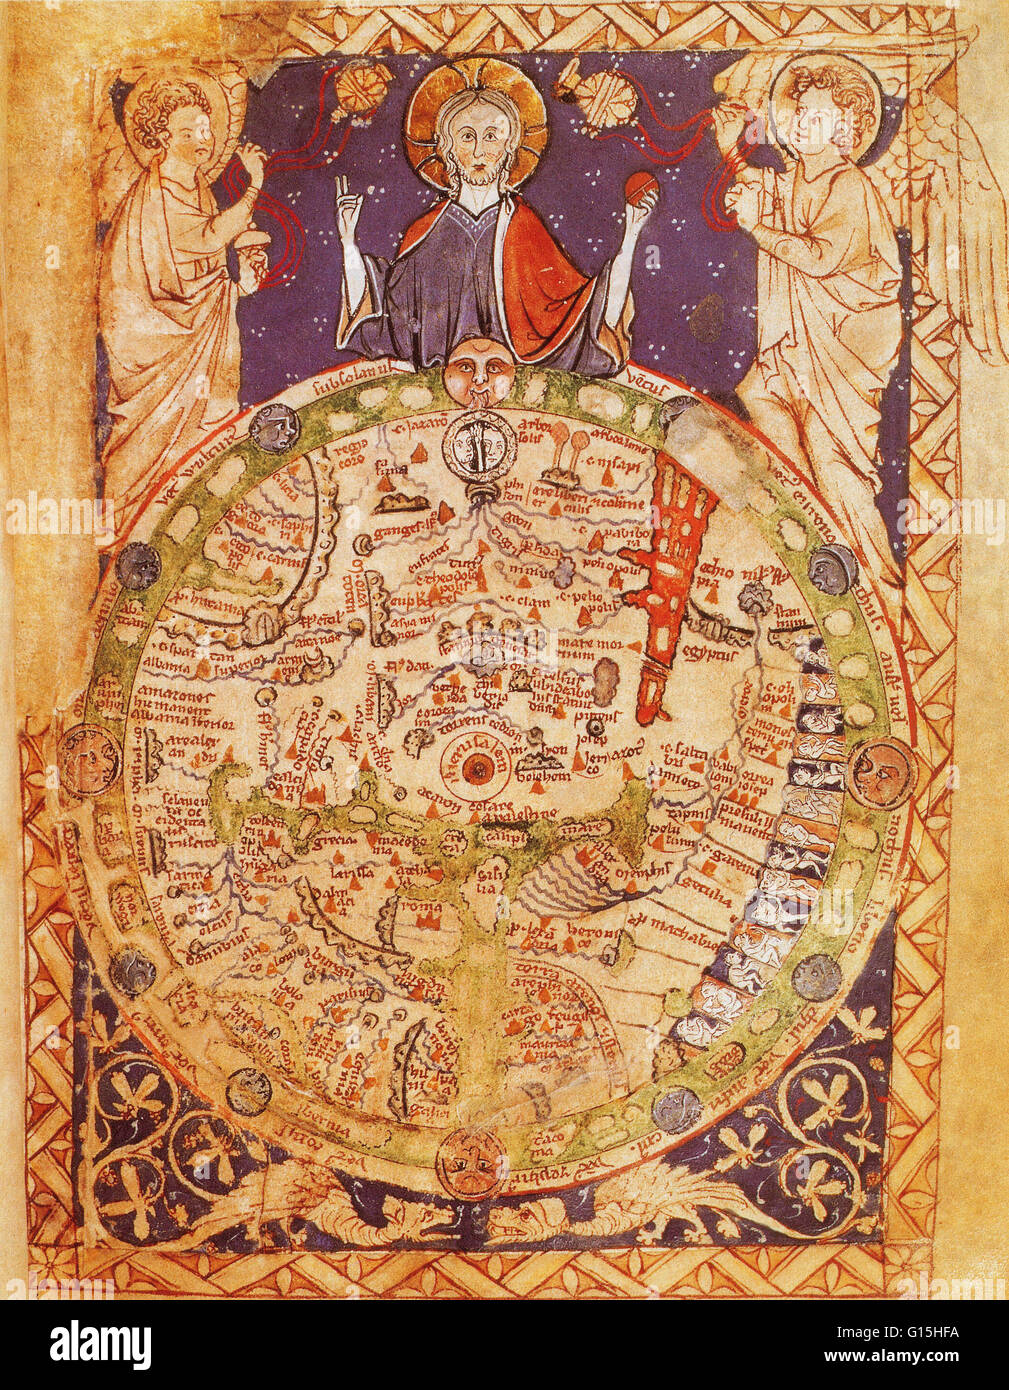 Salterio Mappa mondo creato intorno al 1250. Questo mondo medievale di mappa è stata trovata in un salterio. Foto Stock